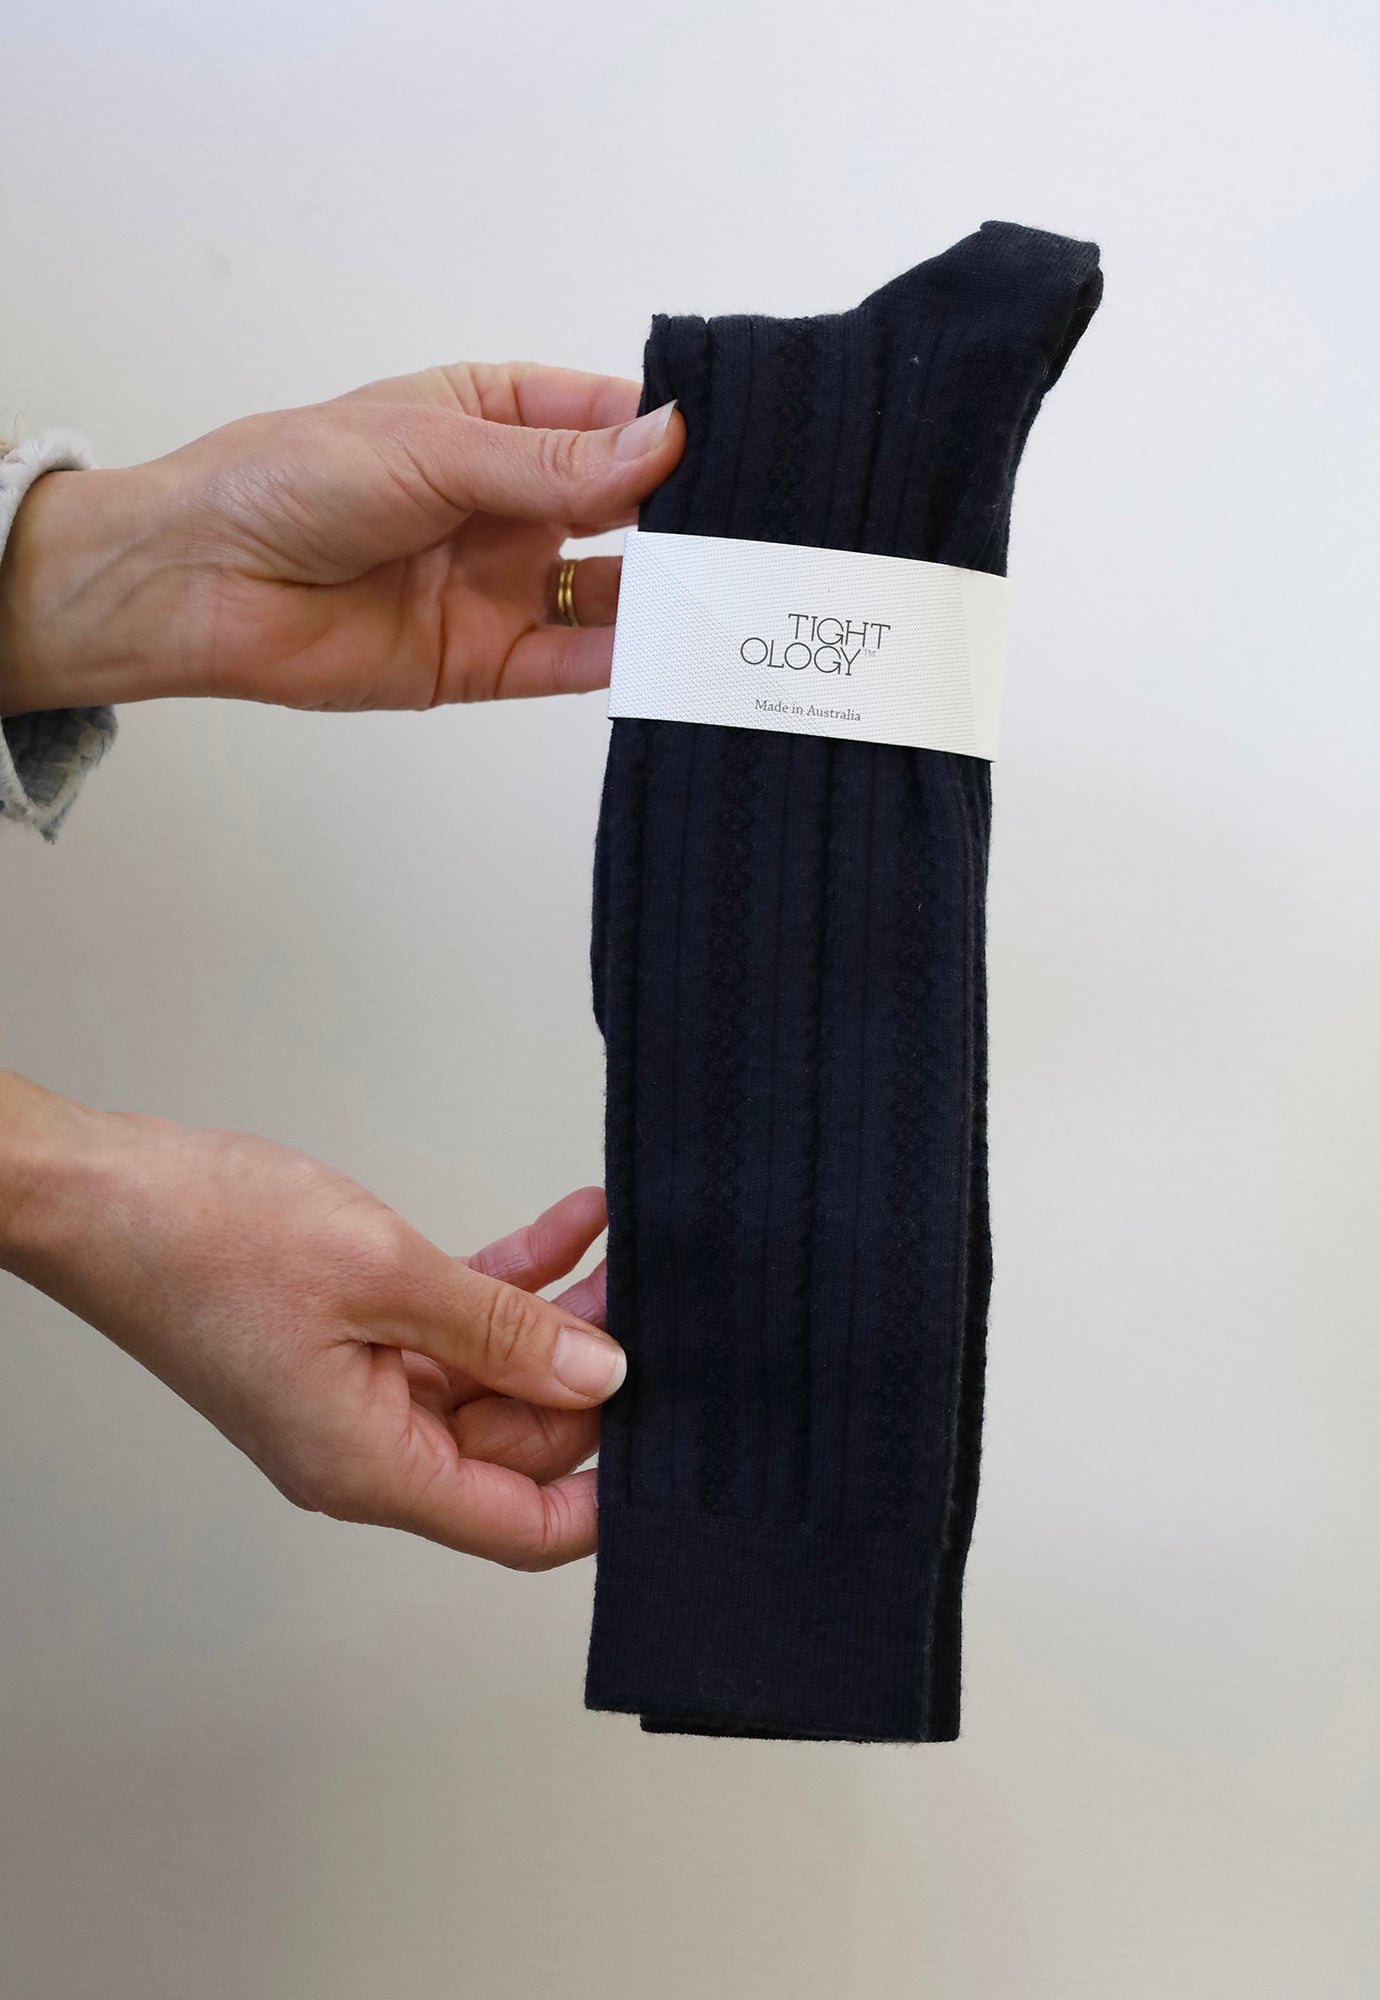 tightology - monte socks - knee length